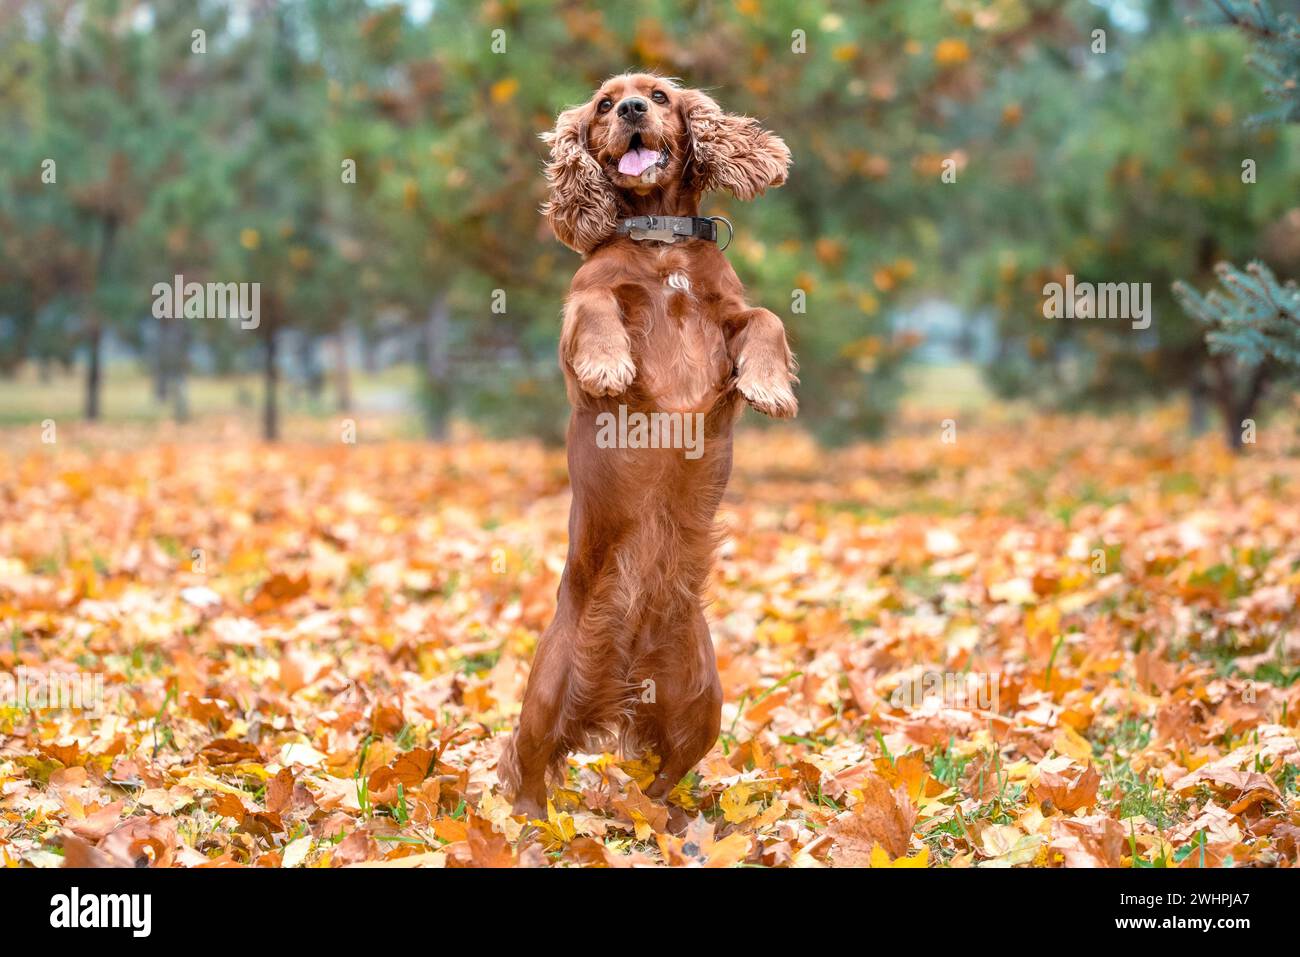 Il cane rosso della razza americana Cocker spaniel salta nel pomeriggio in una passeggiata nel parco in autunno in piedi sulle zampe posteriori Foto Stock